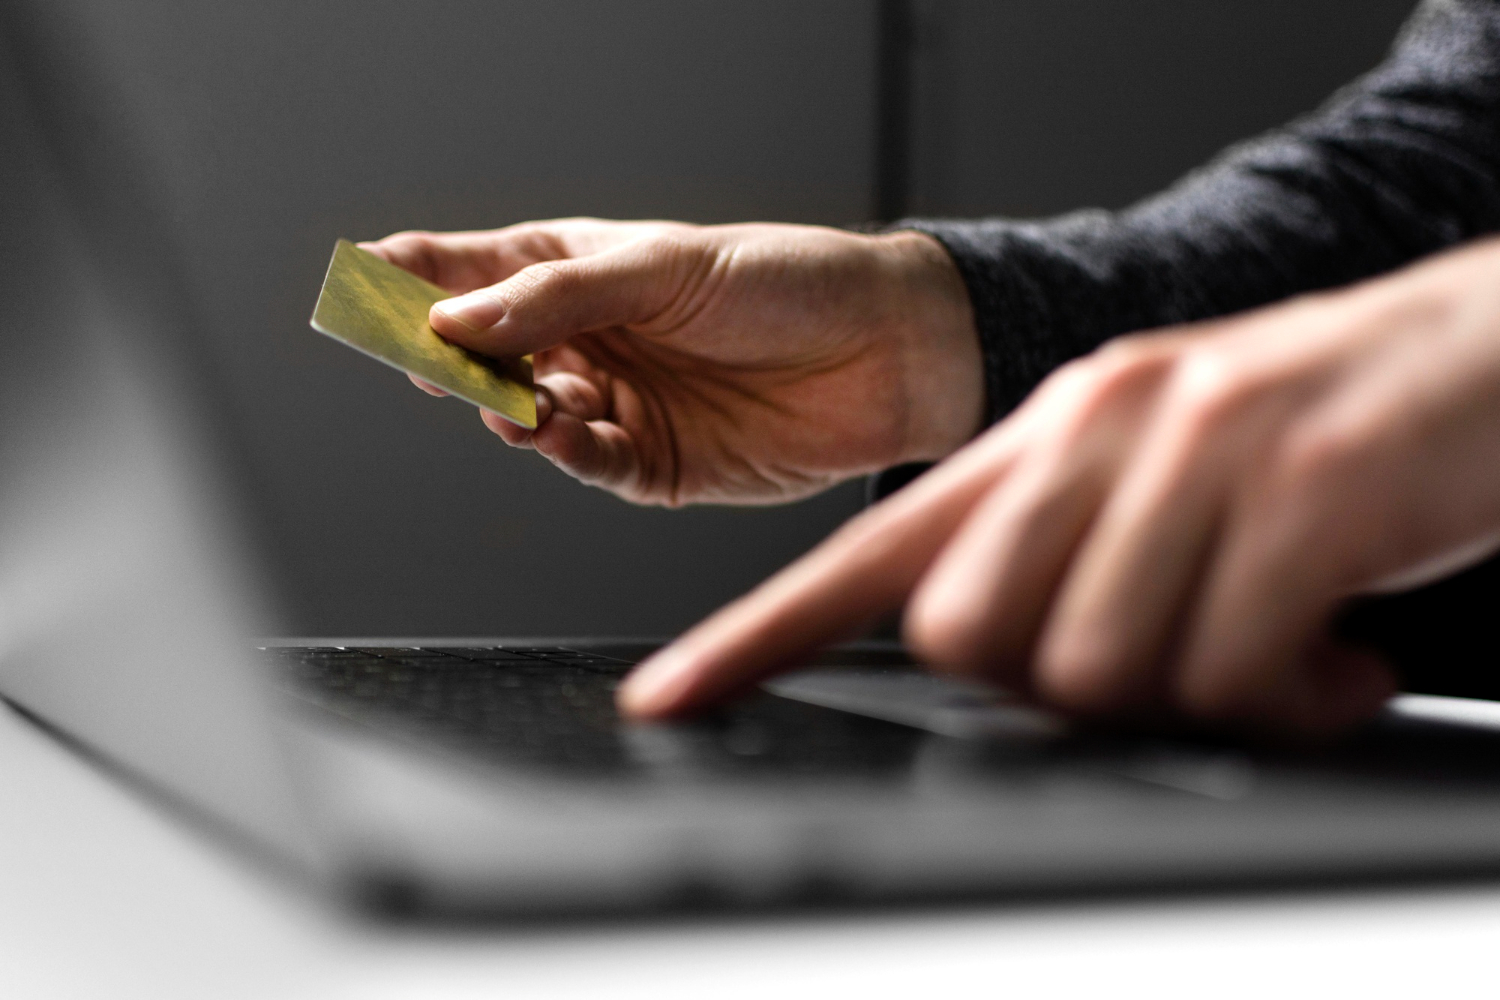 Fraude no cartão de crédito: 15 cuidados